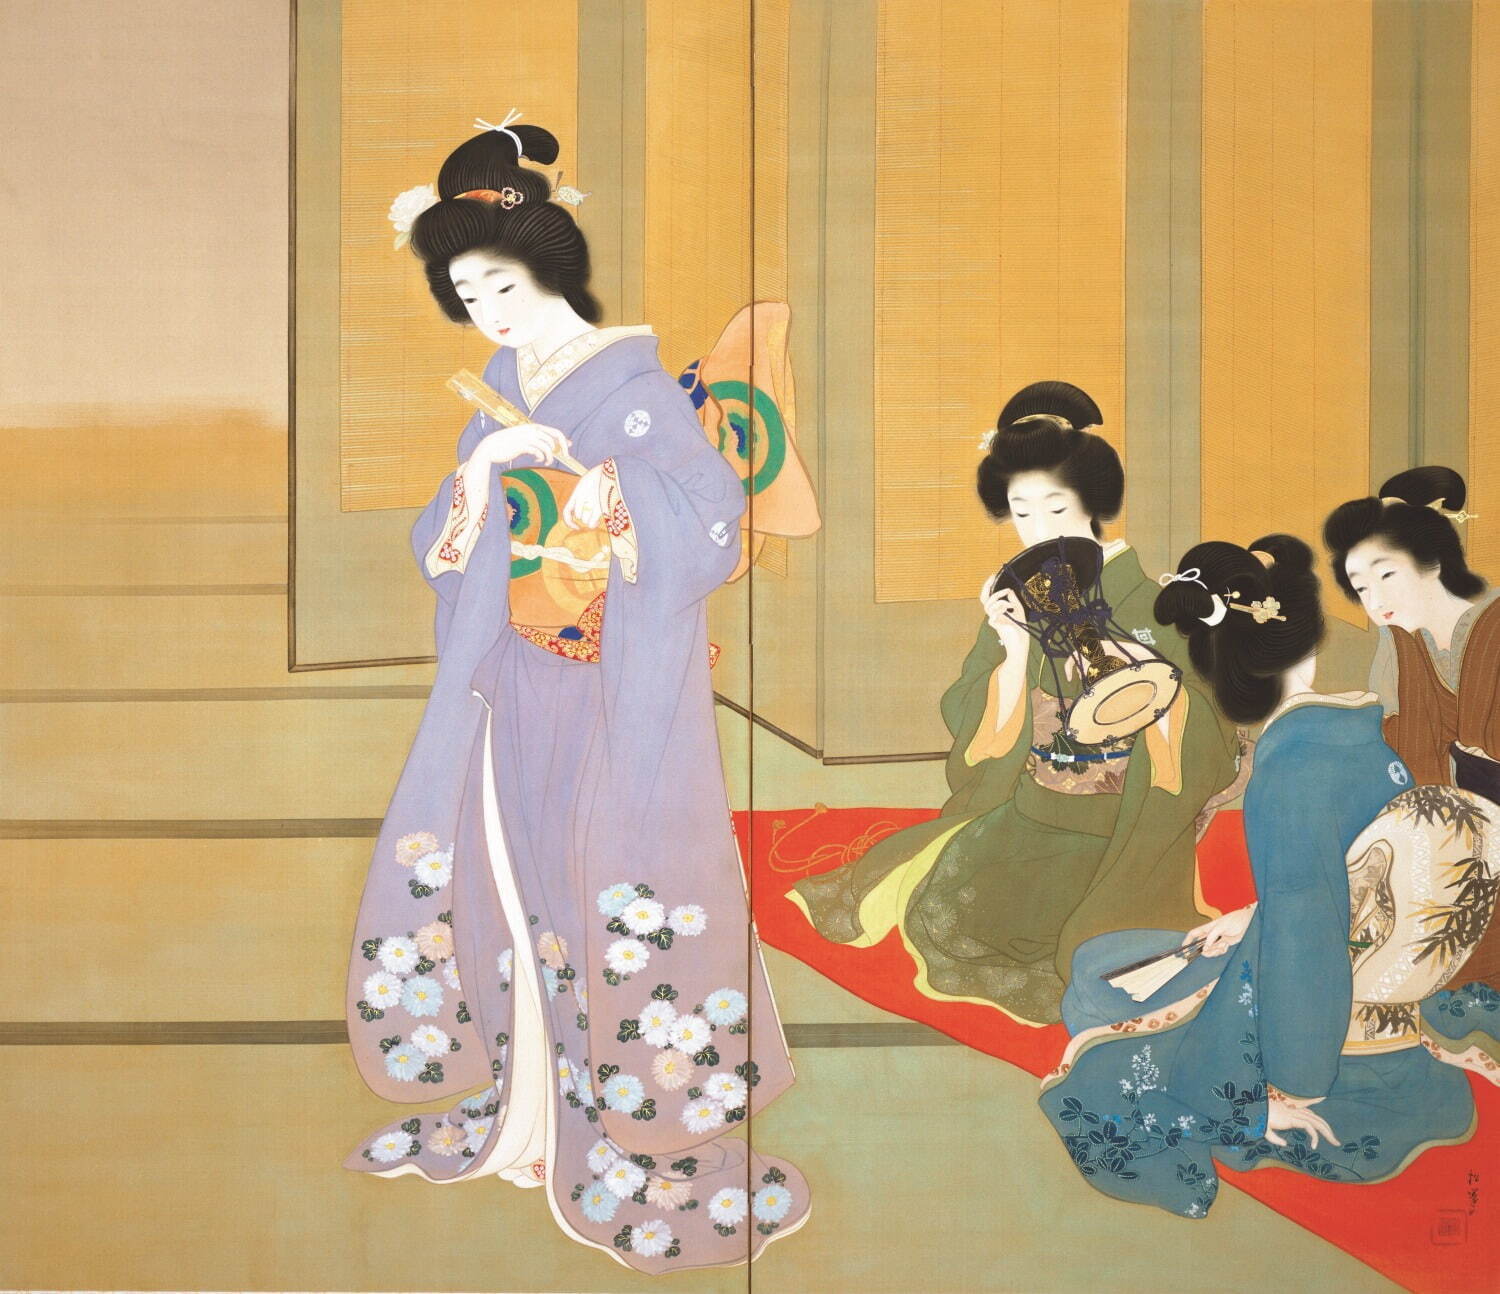 上村松園《舞仕度》1914年 京都国立近代美術館